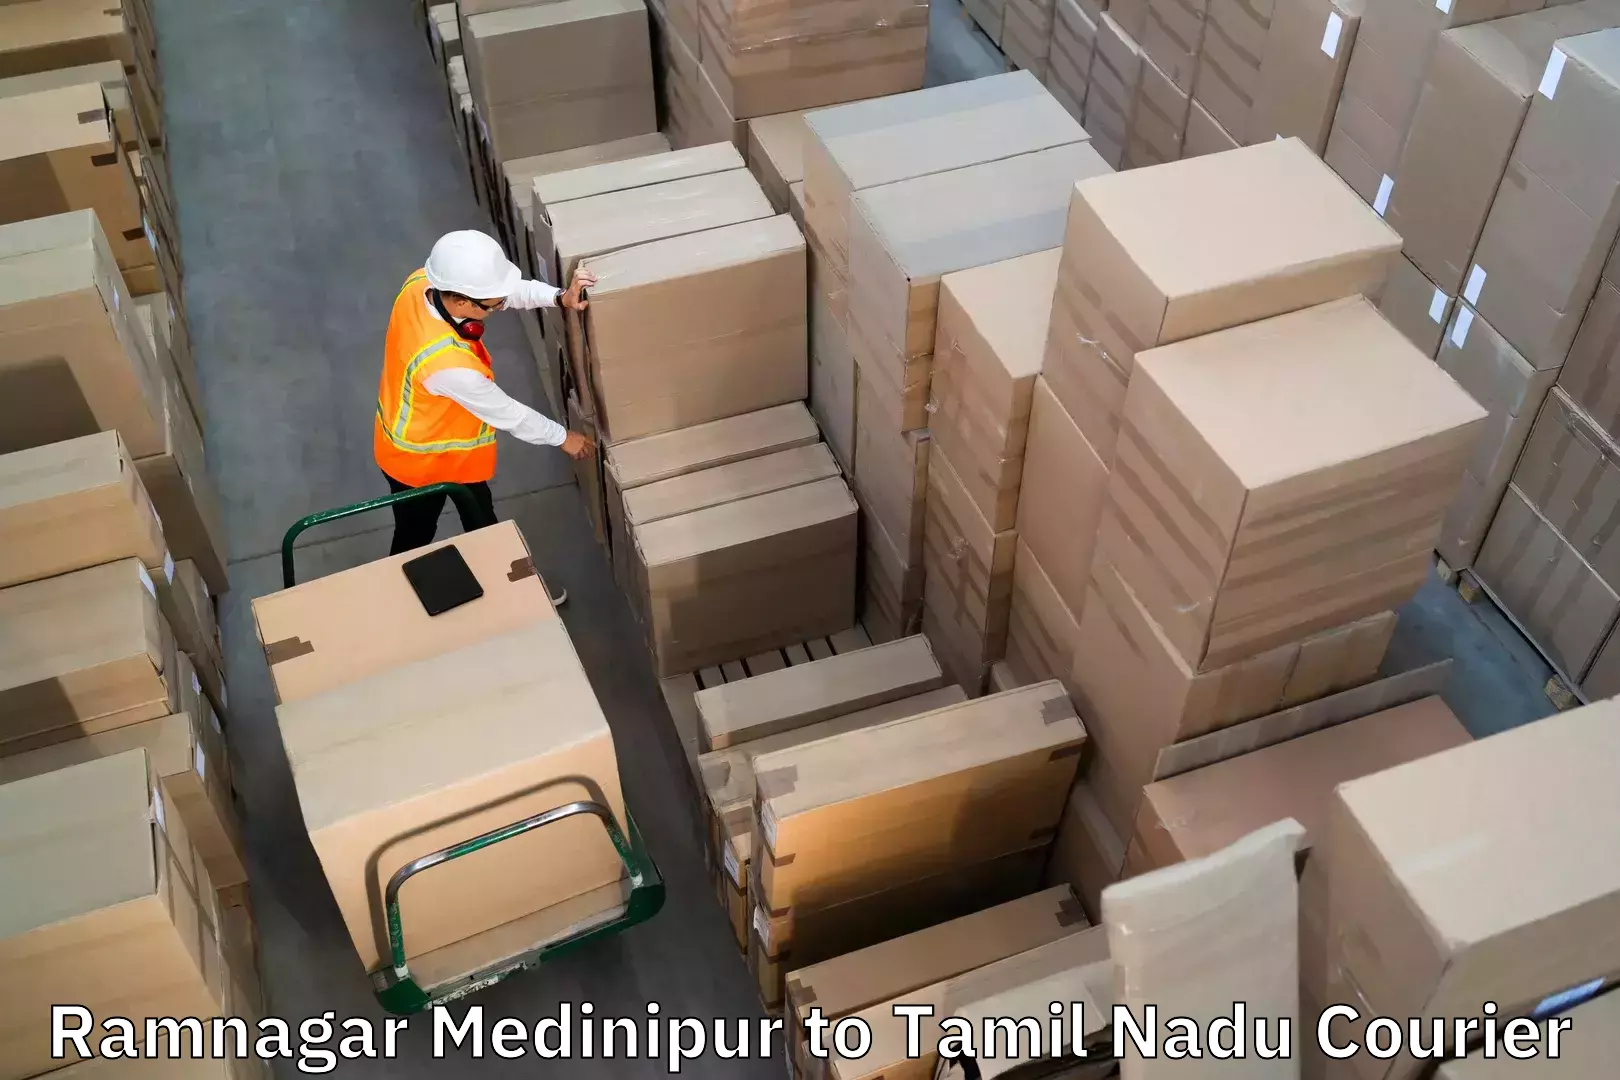 Baggage transport management Ramnagar Medinipur to Parangimalai